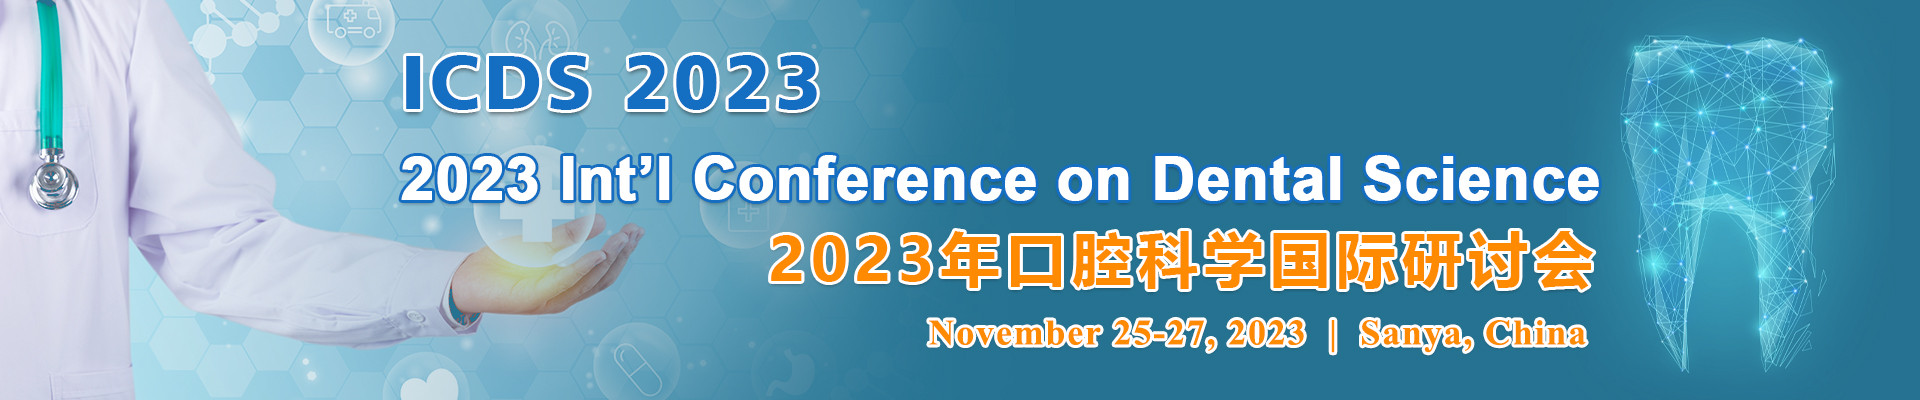 2023年口腔科学国际研讨会（ICDS 2023）